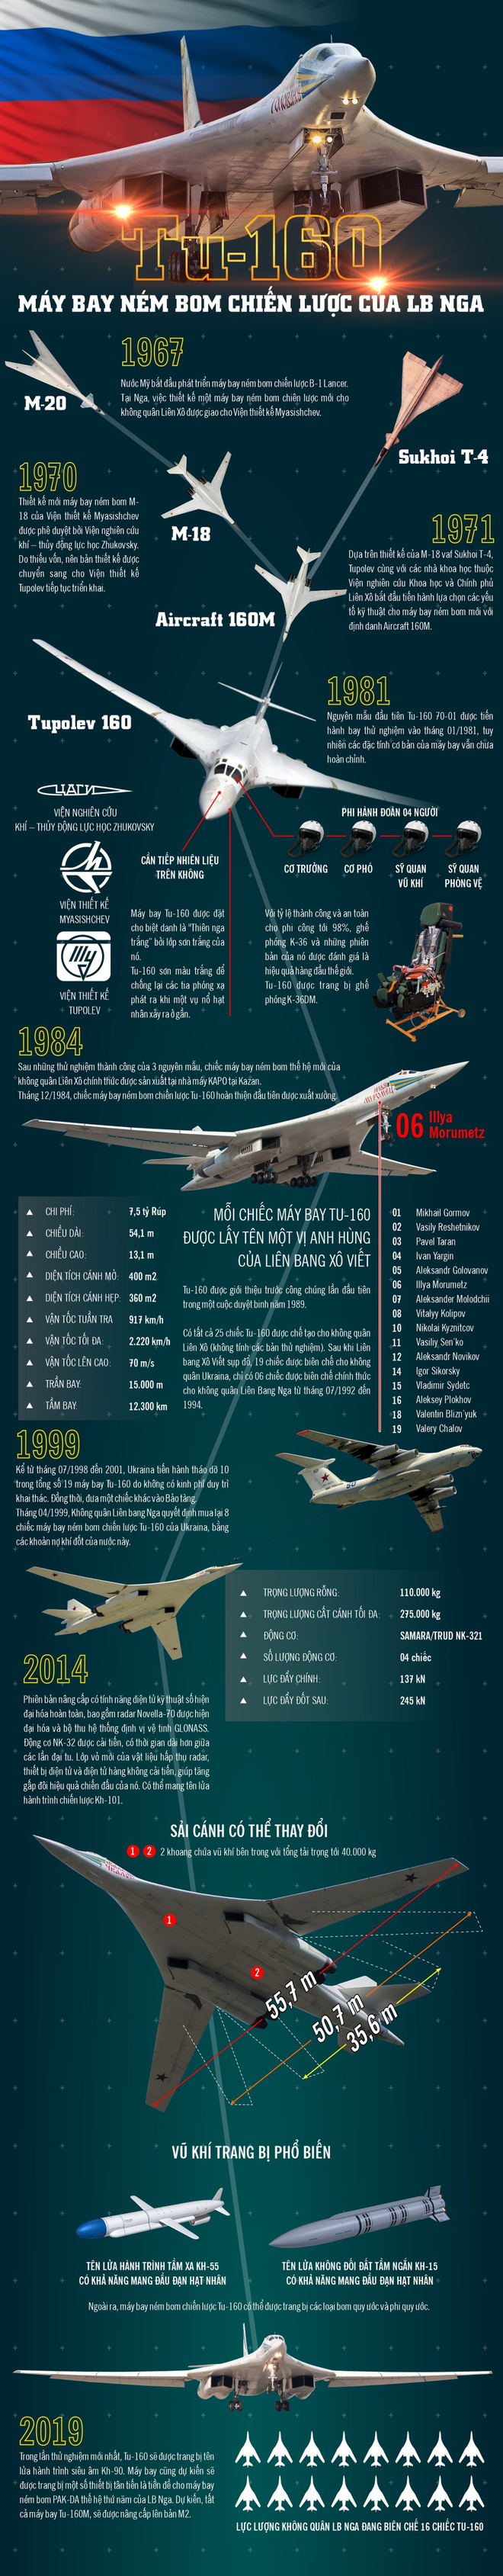 Infographic: Máy bay ném bom chiến lược Tu-160 của LB Nga - Ảnh 1.